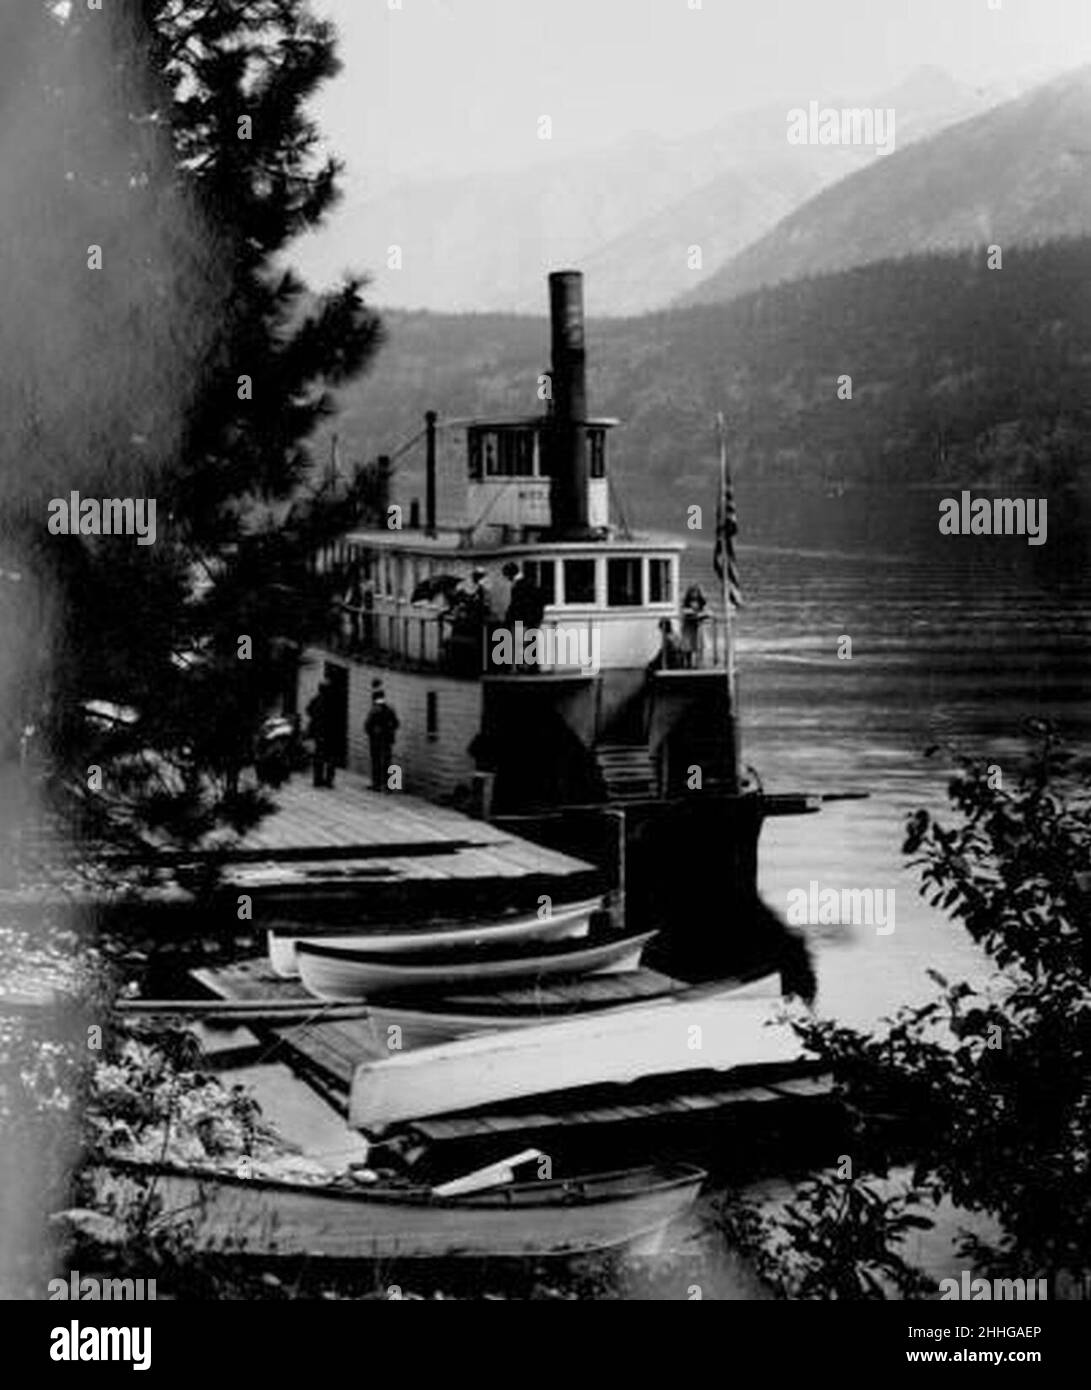 Stehekin (bateau à vapeur) à quai, lac Chelan, juillet 1902. Banque D'Images